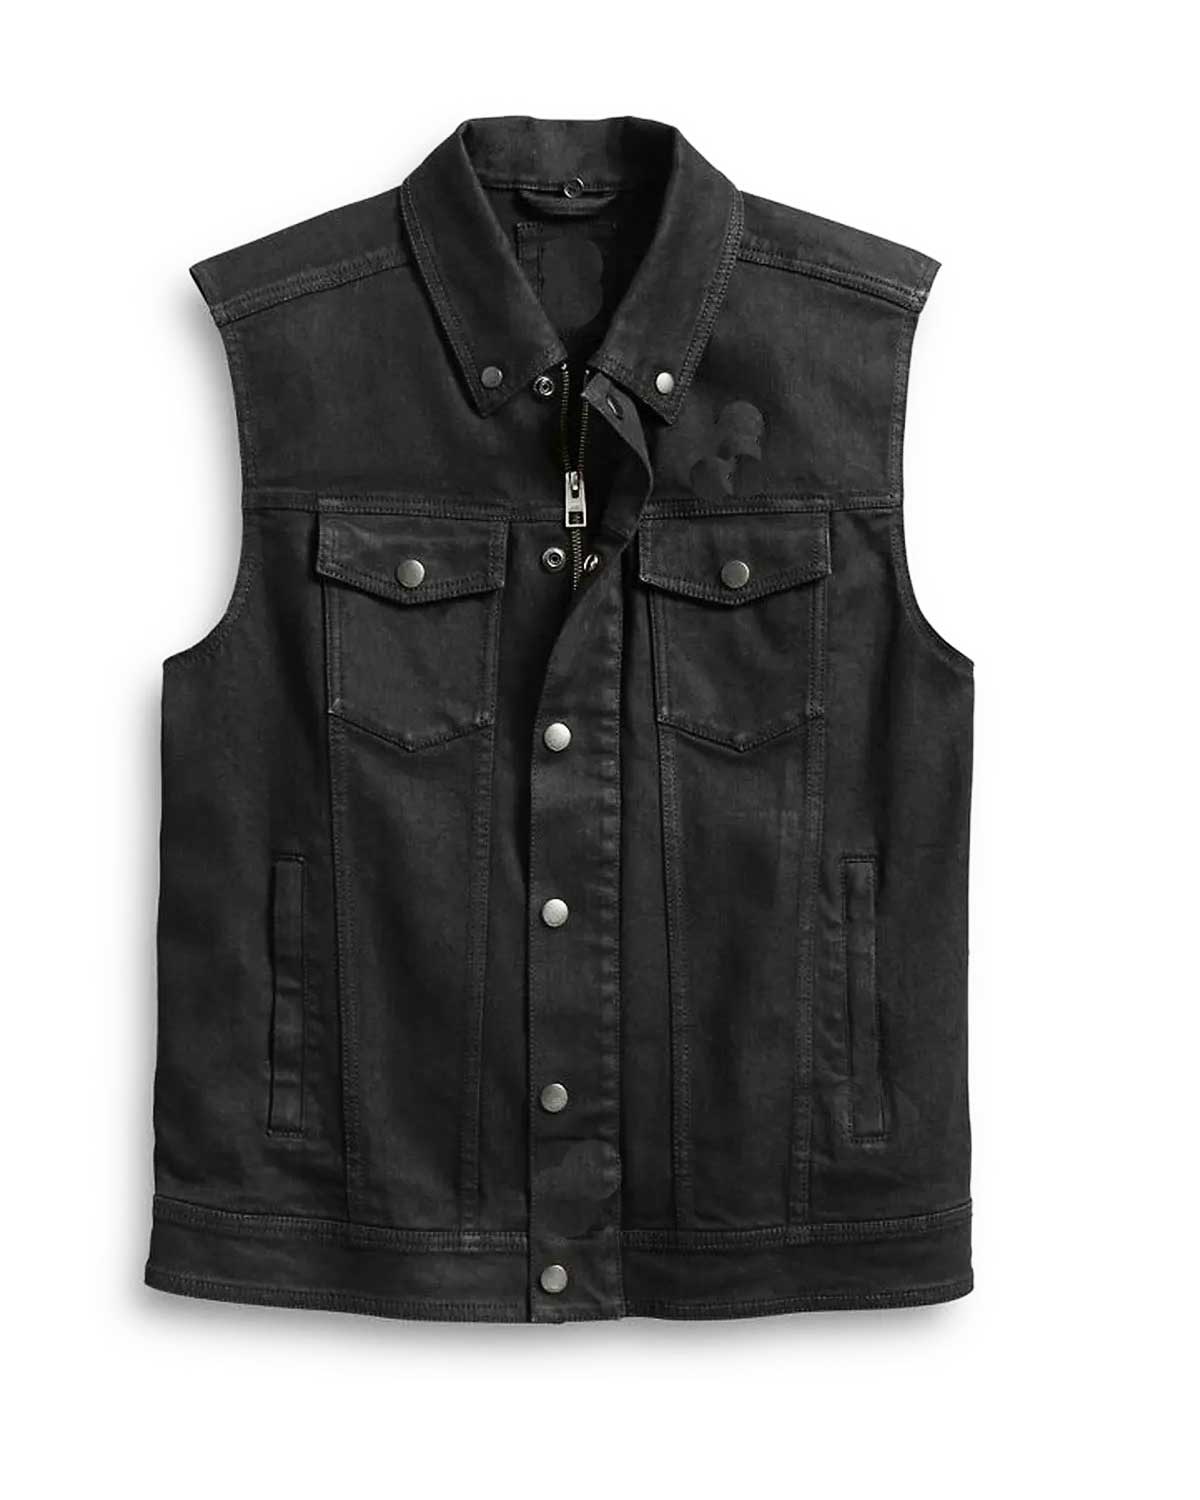 Slim Fit 3 In 1 Black Denim Motorcycle Vest Jacket | Elite Jacket